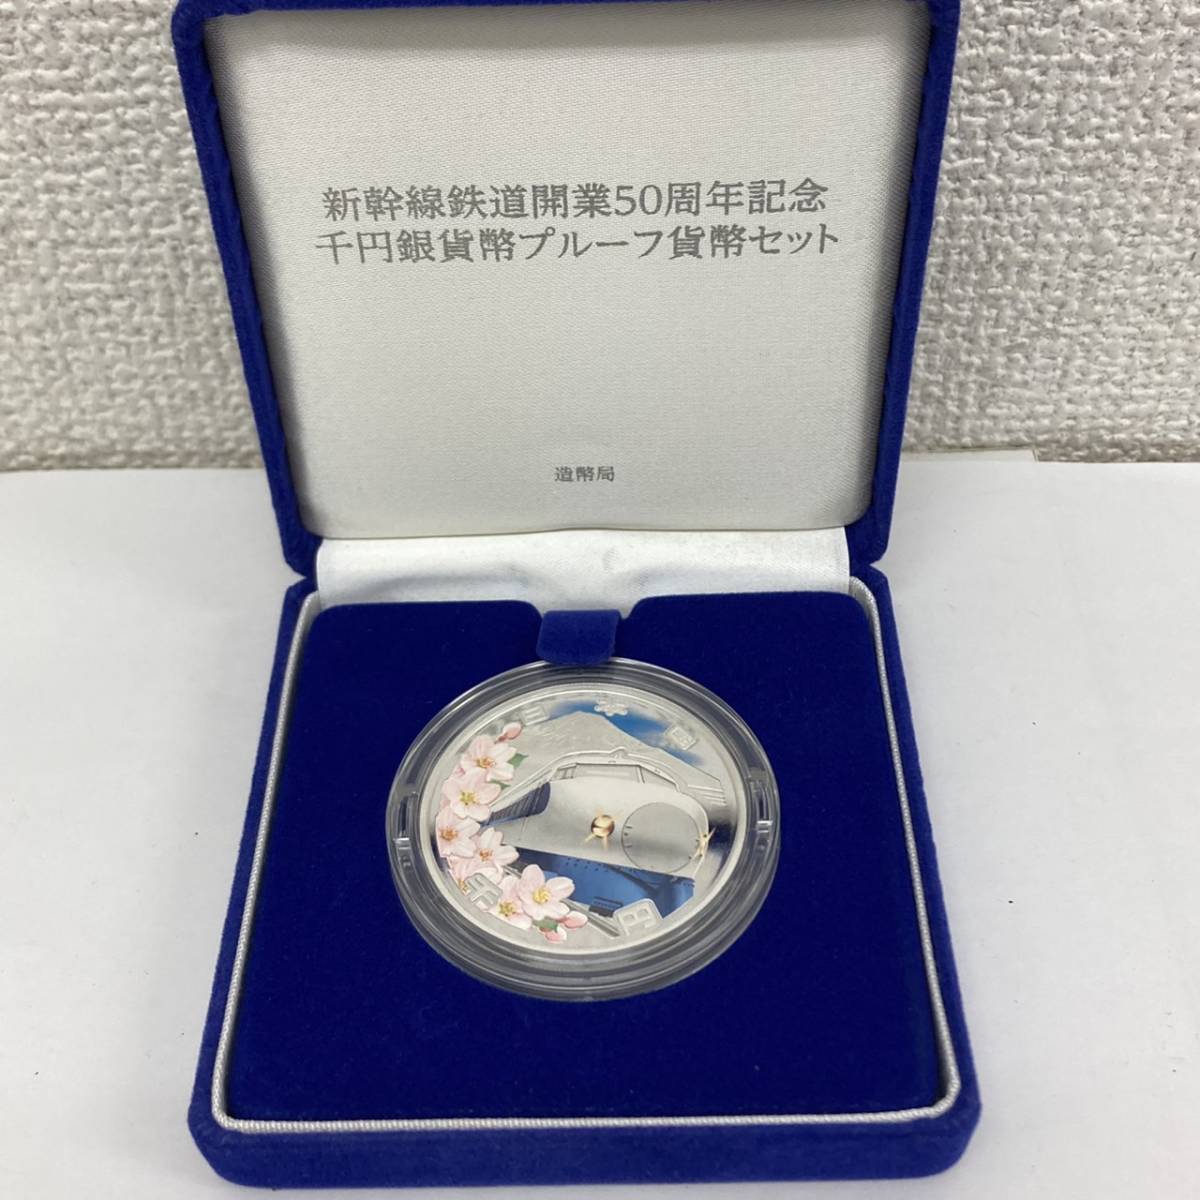 開業55周年記念 東海道新幹線 純銀製公式法定貨幣セット 全5点-